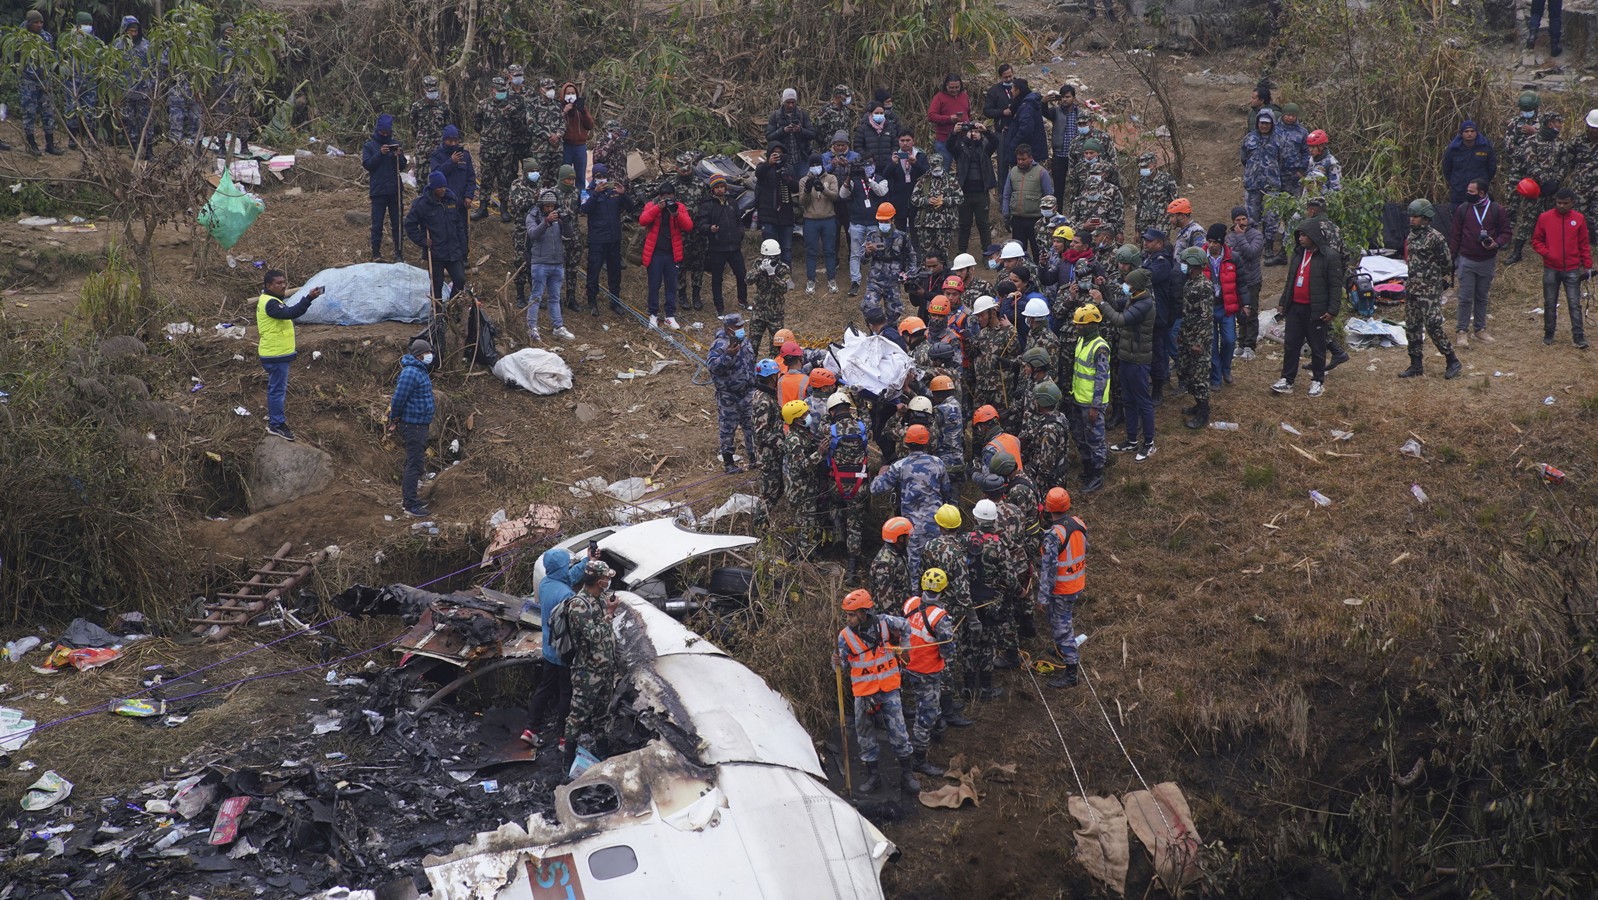 список погибших в авиакатастрофе в египте